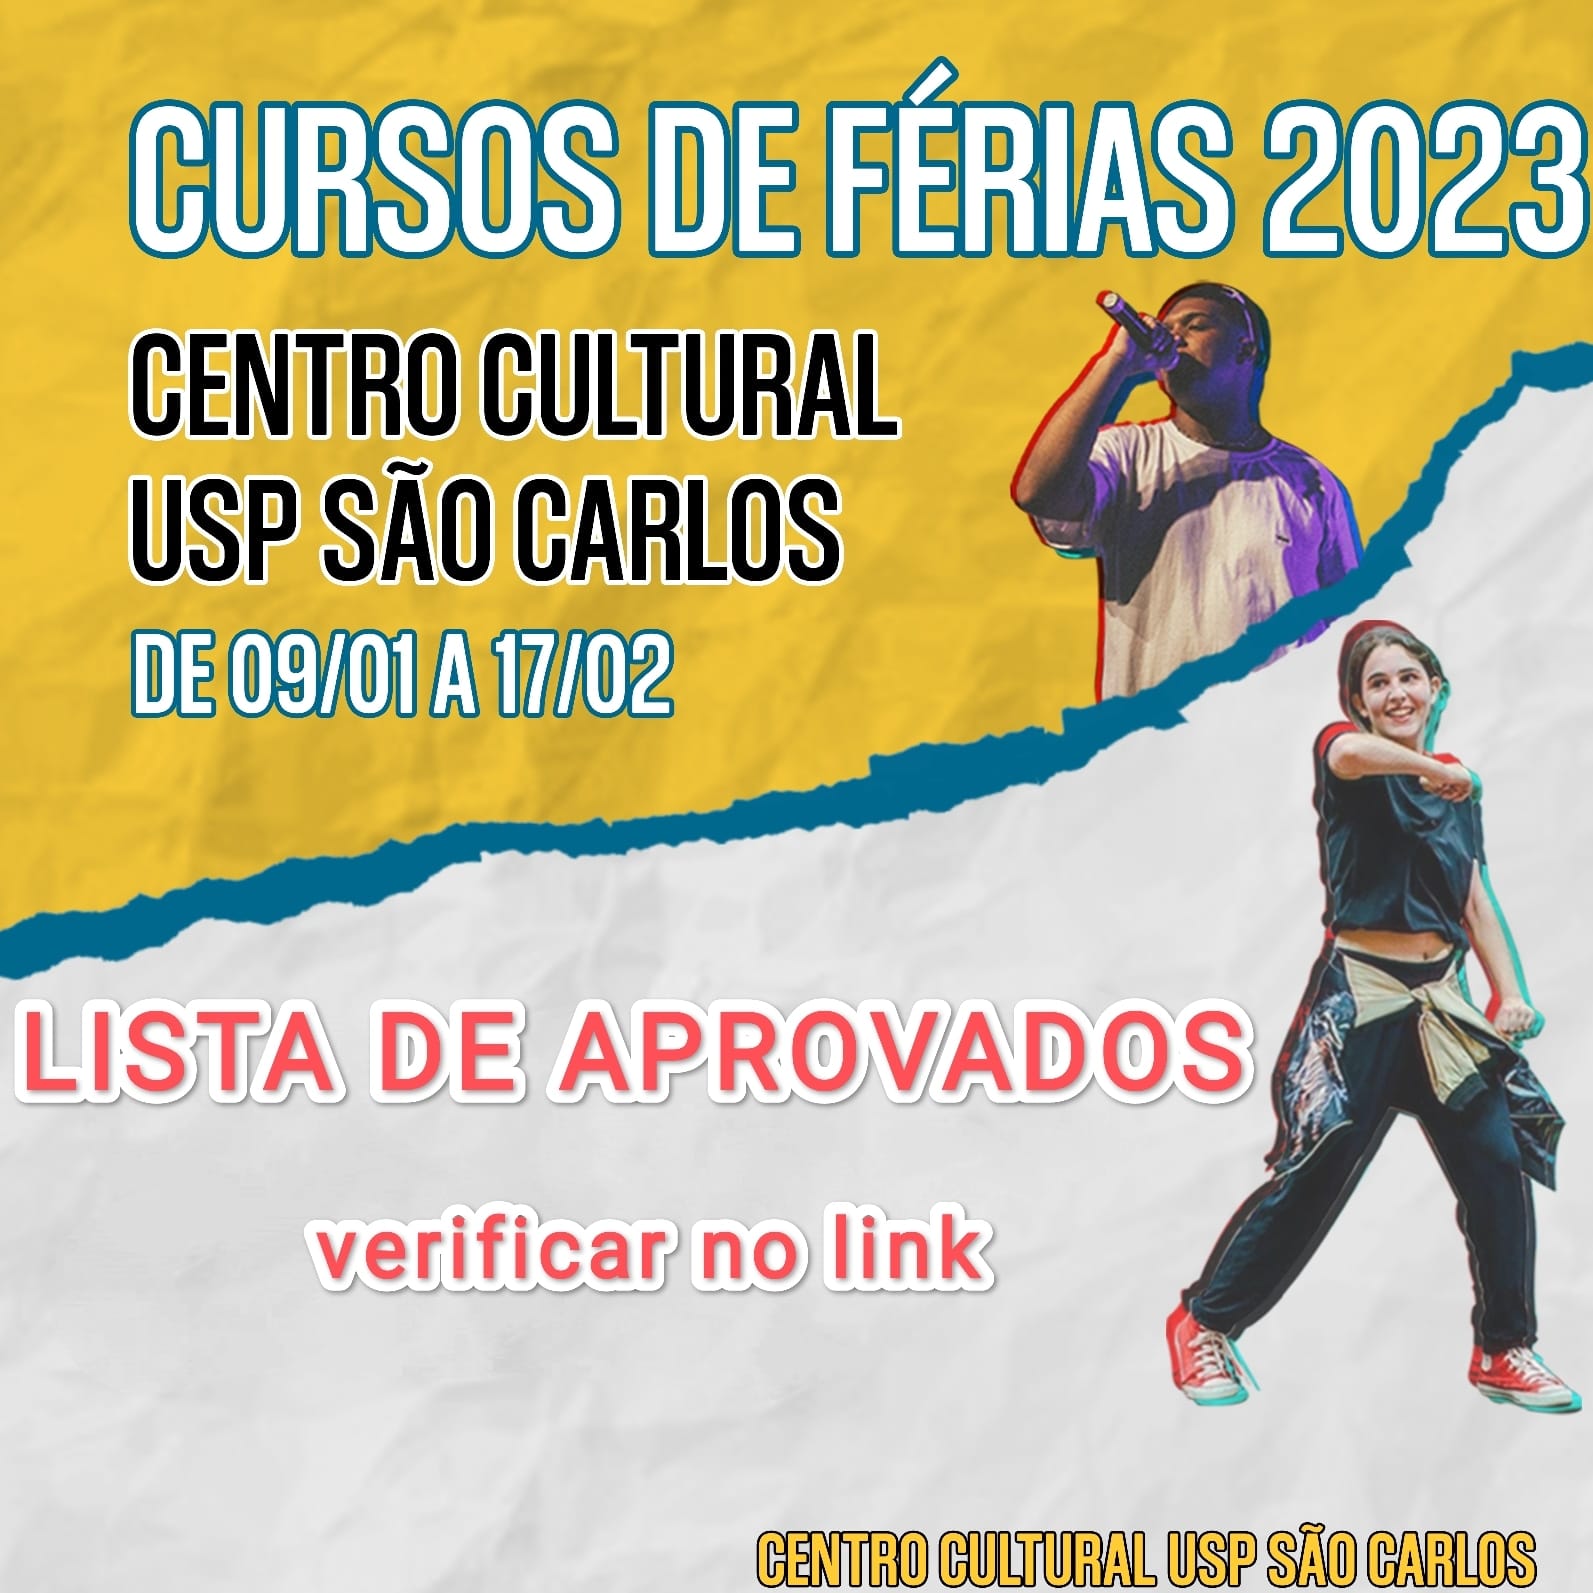 LISTA DE APROVADOS DOS CURSOS DE FÉRIAS 2023